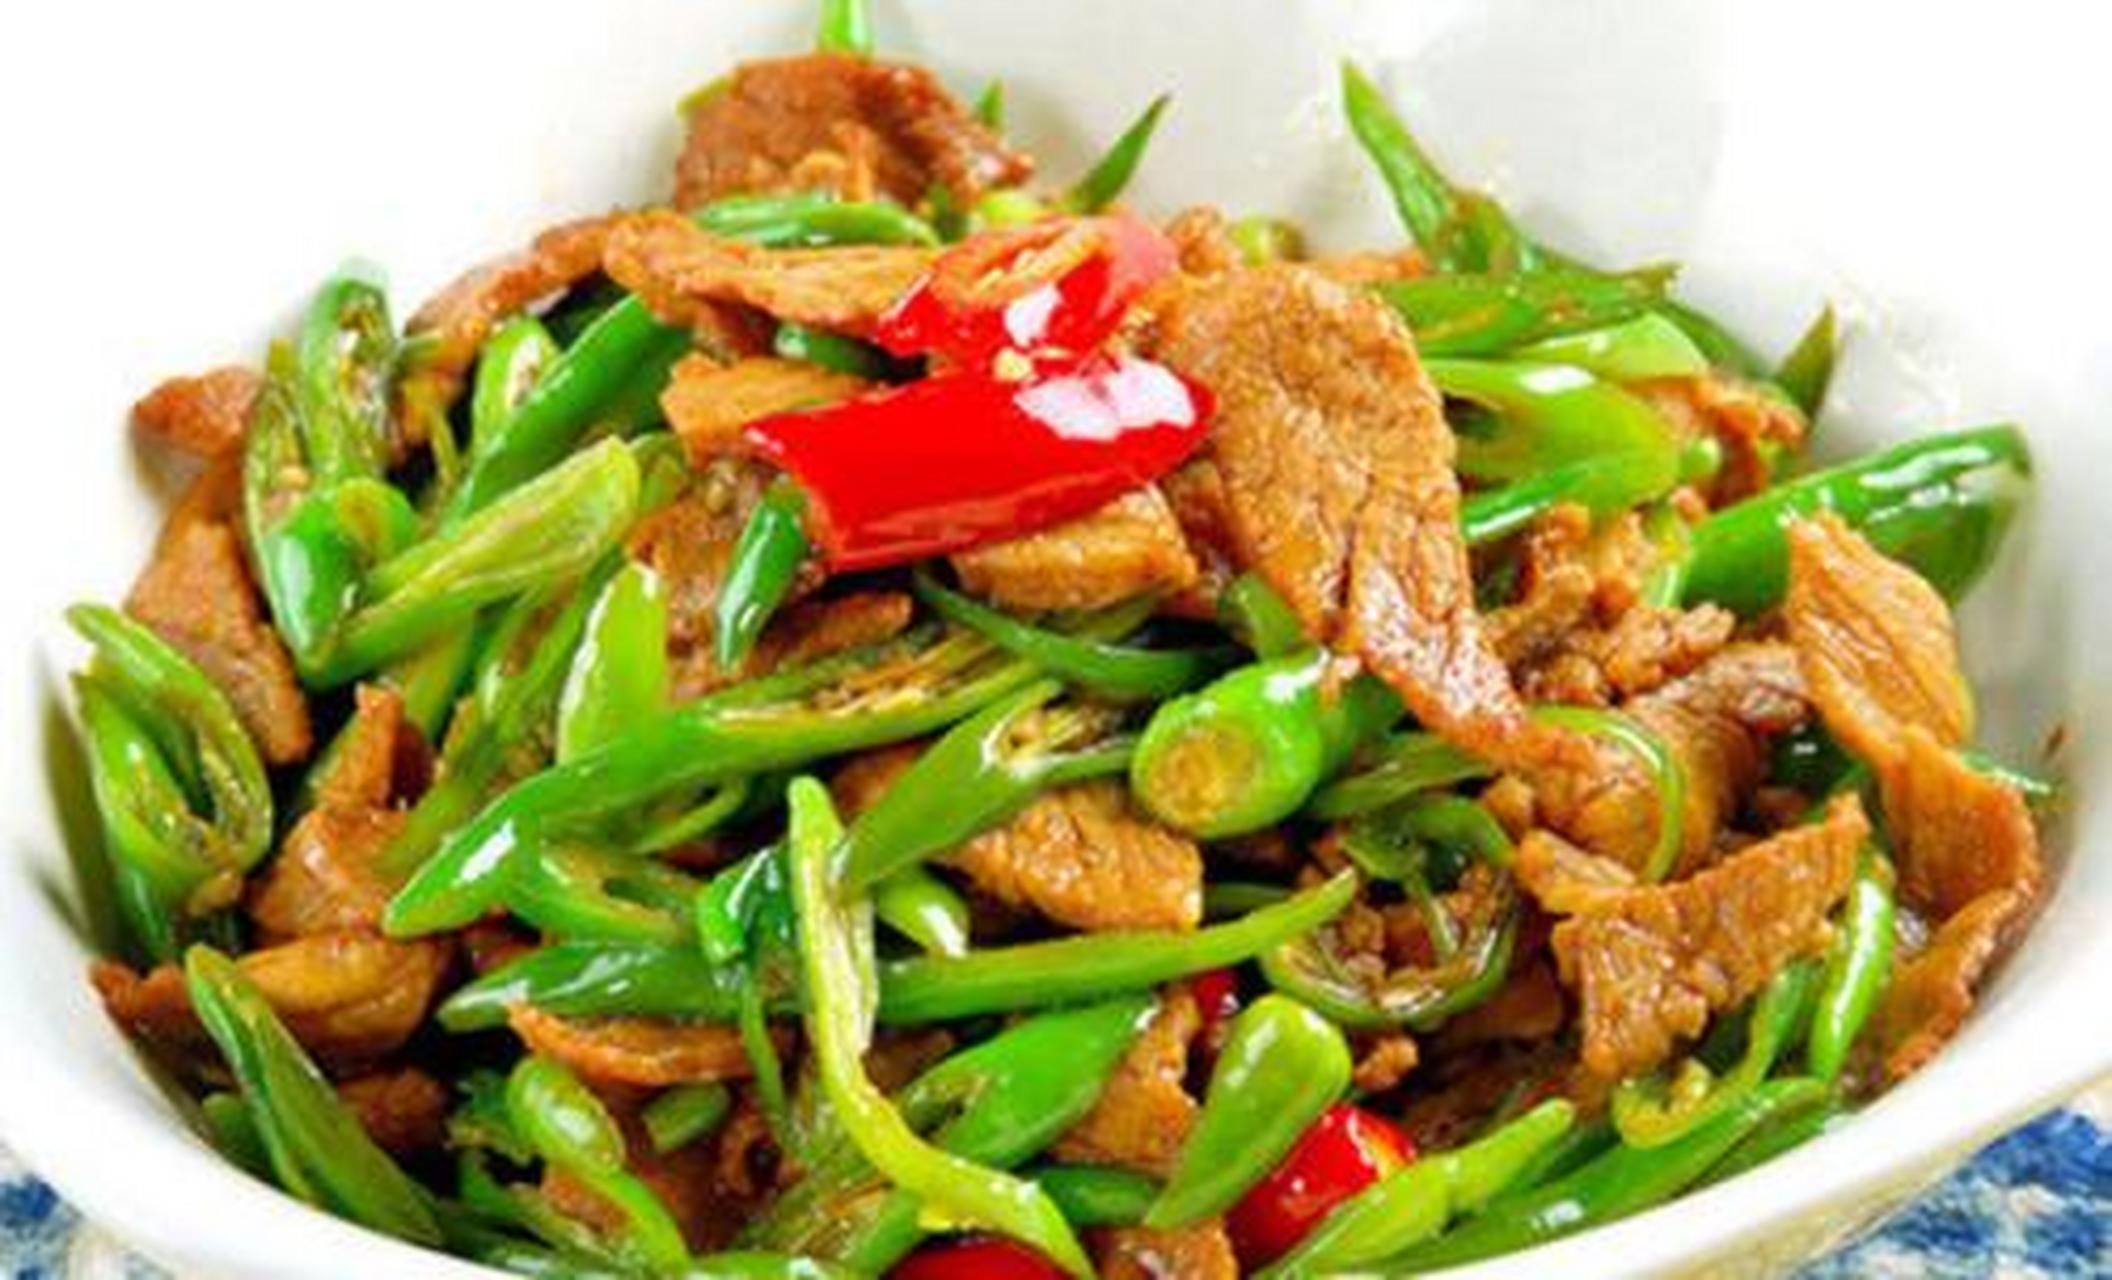 辣椒小炒肉,这菜可是湖南人的家常菜,用料虽很简单,就辣椒和五花肉